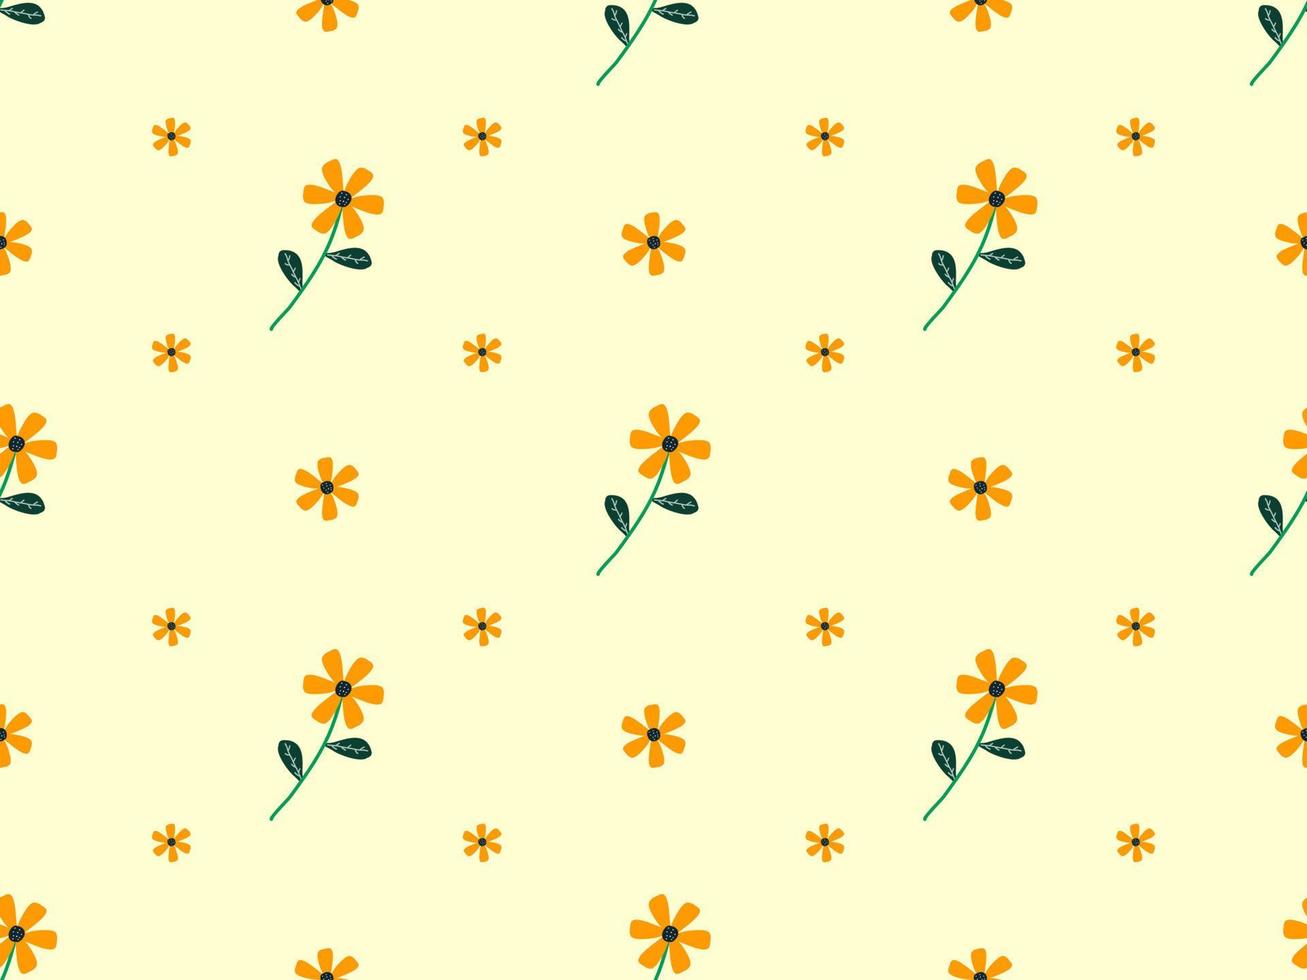 bloem cartoon karakter naadloze patroon op gele achtergrond. vector